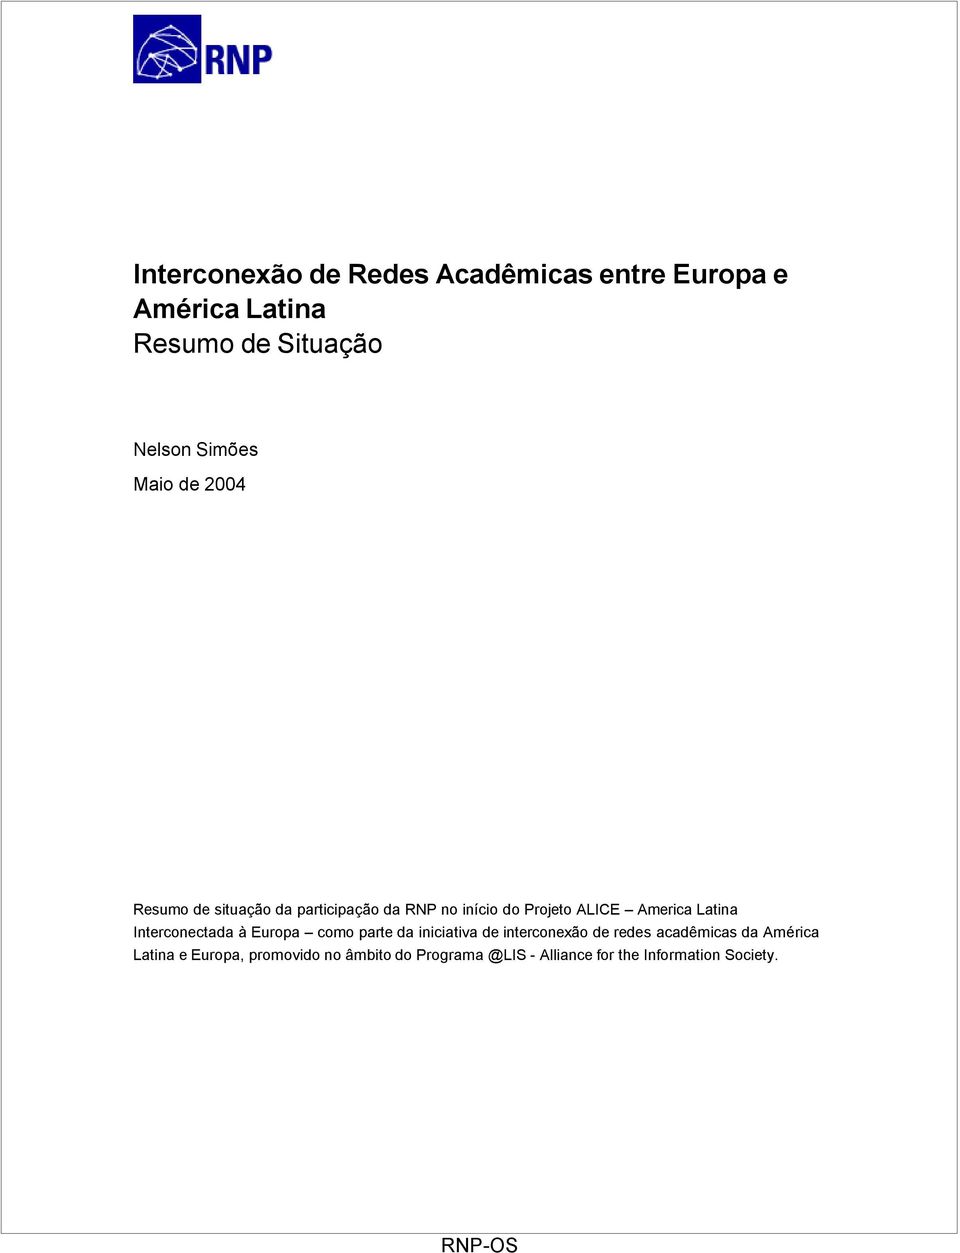 Latina Interconectada à Europa como parte da iniciativa de interconexão de redes acadêmicas da